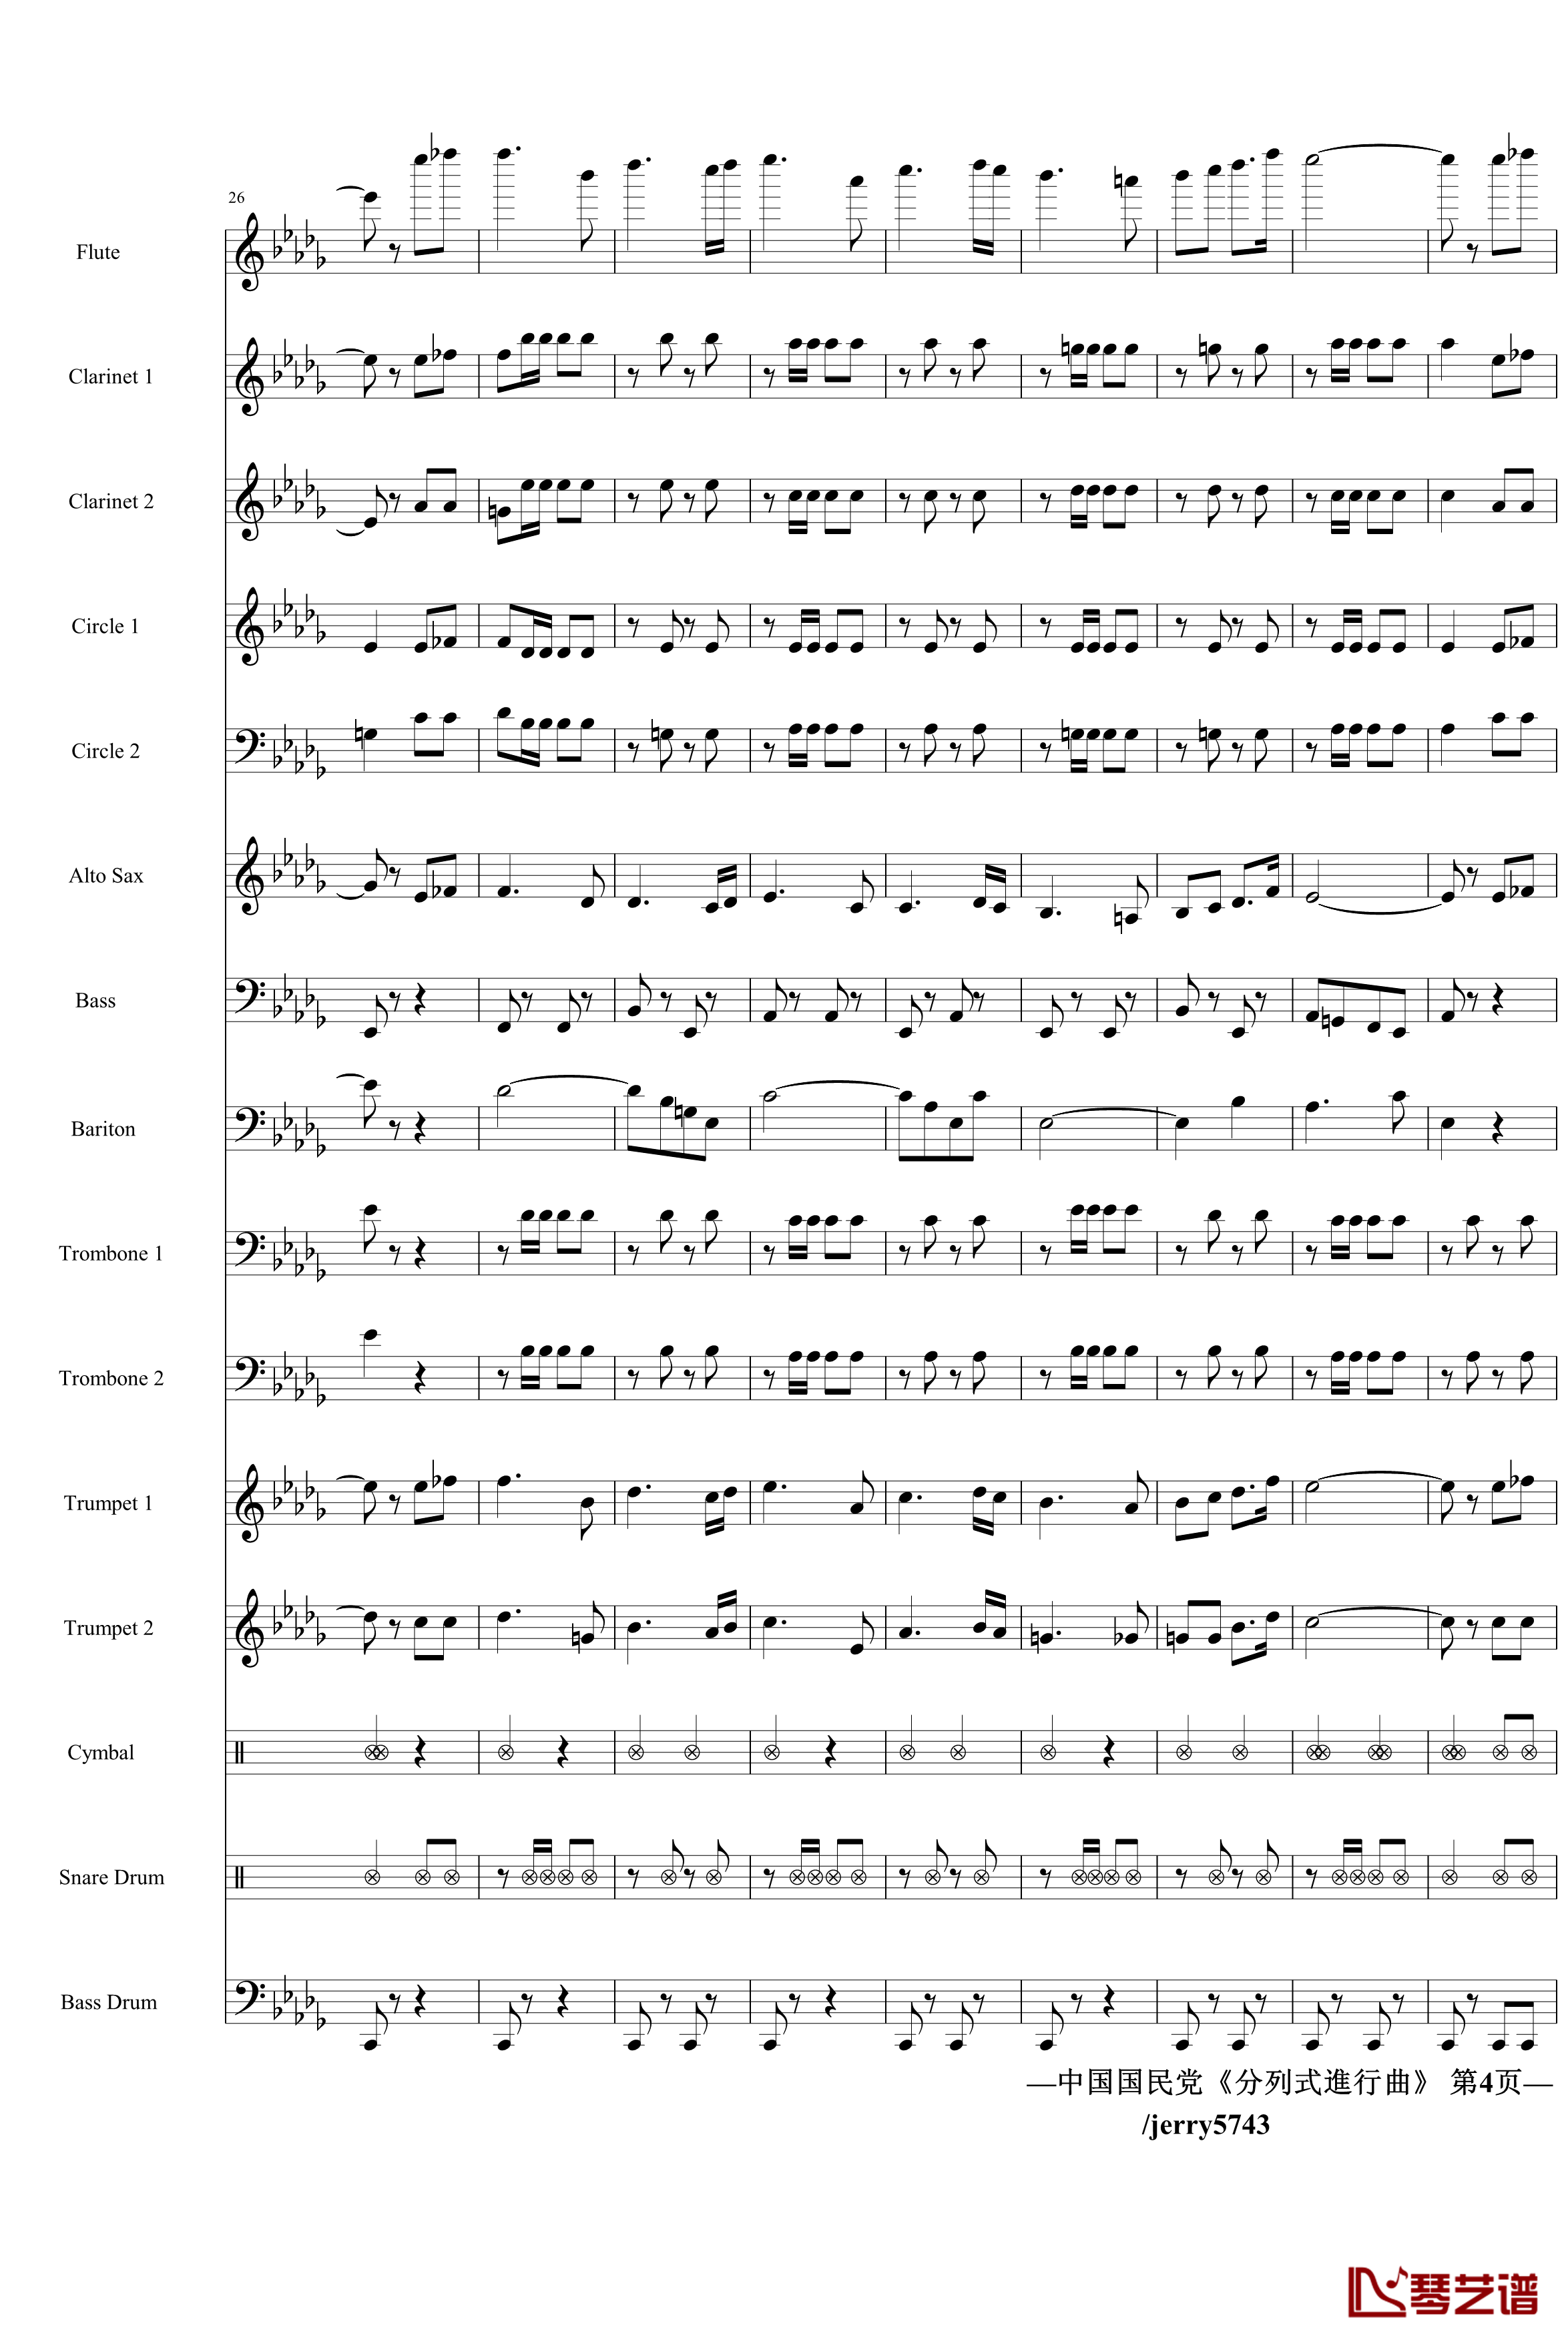 分列式進行曲钢琴谱-jerry5743出品-中国名曲4